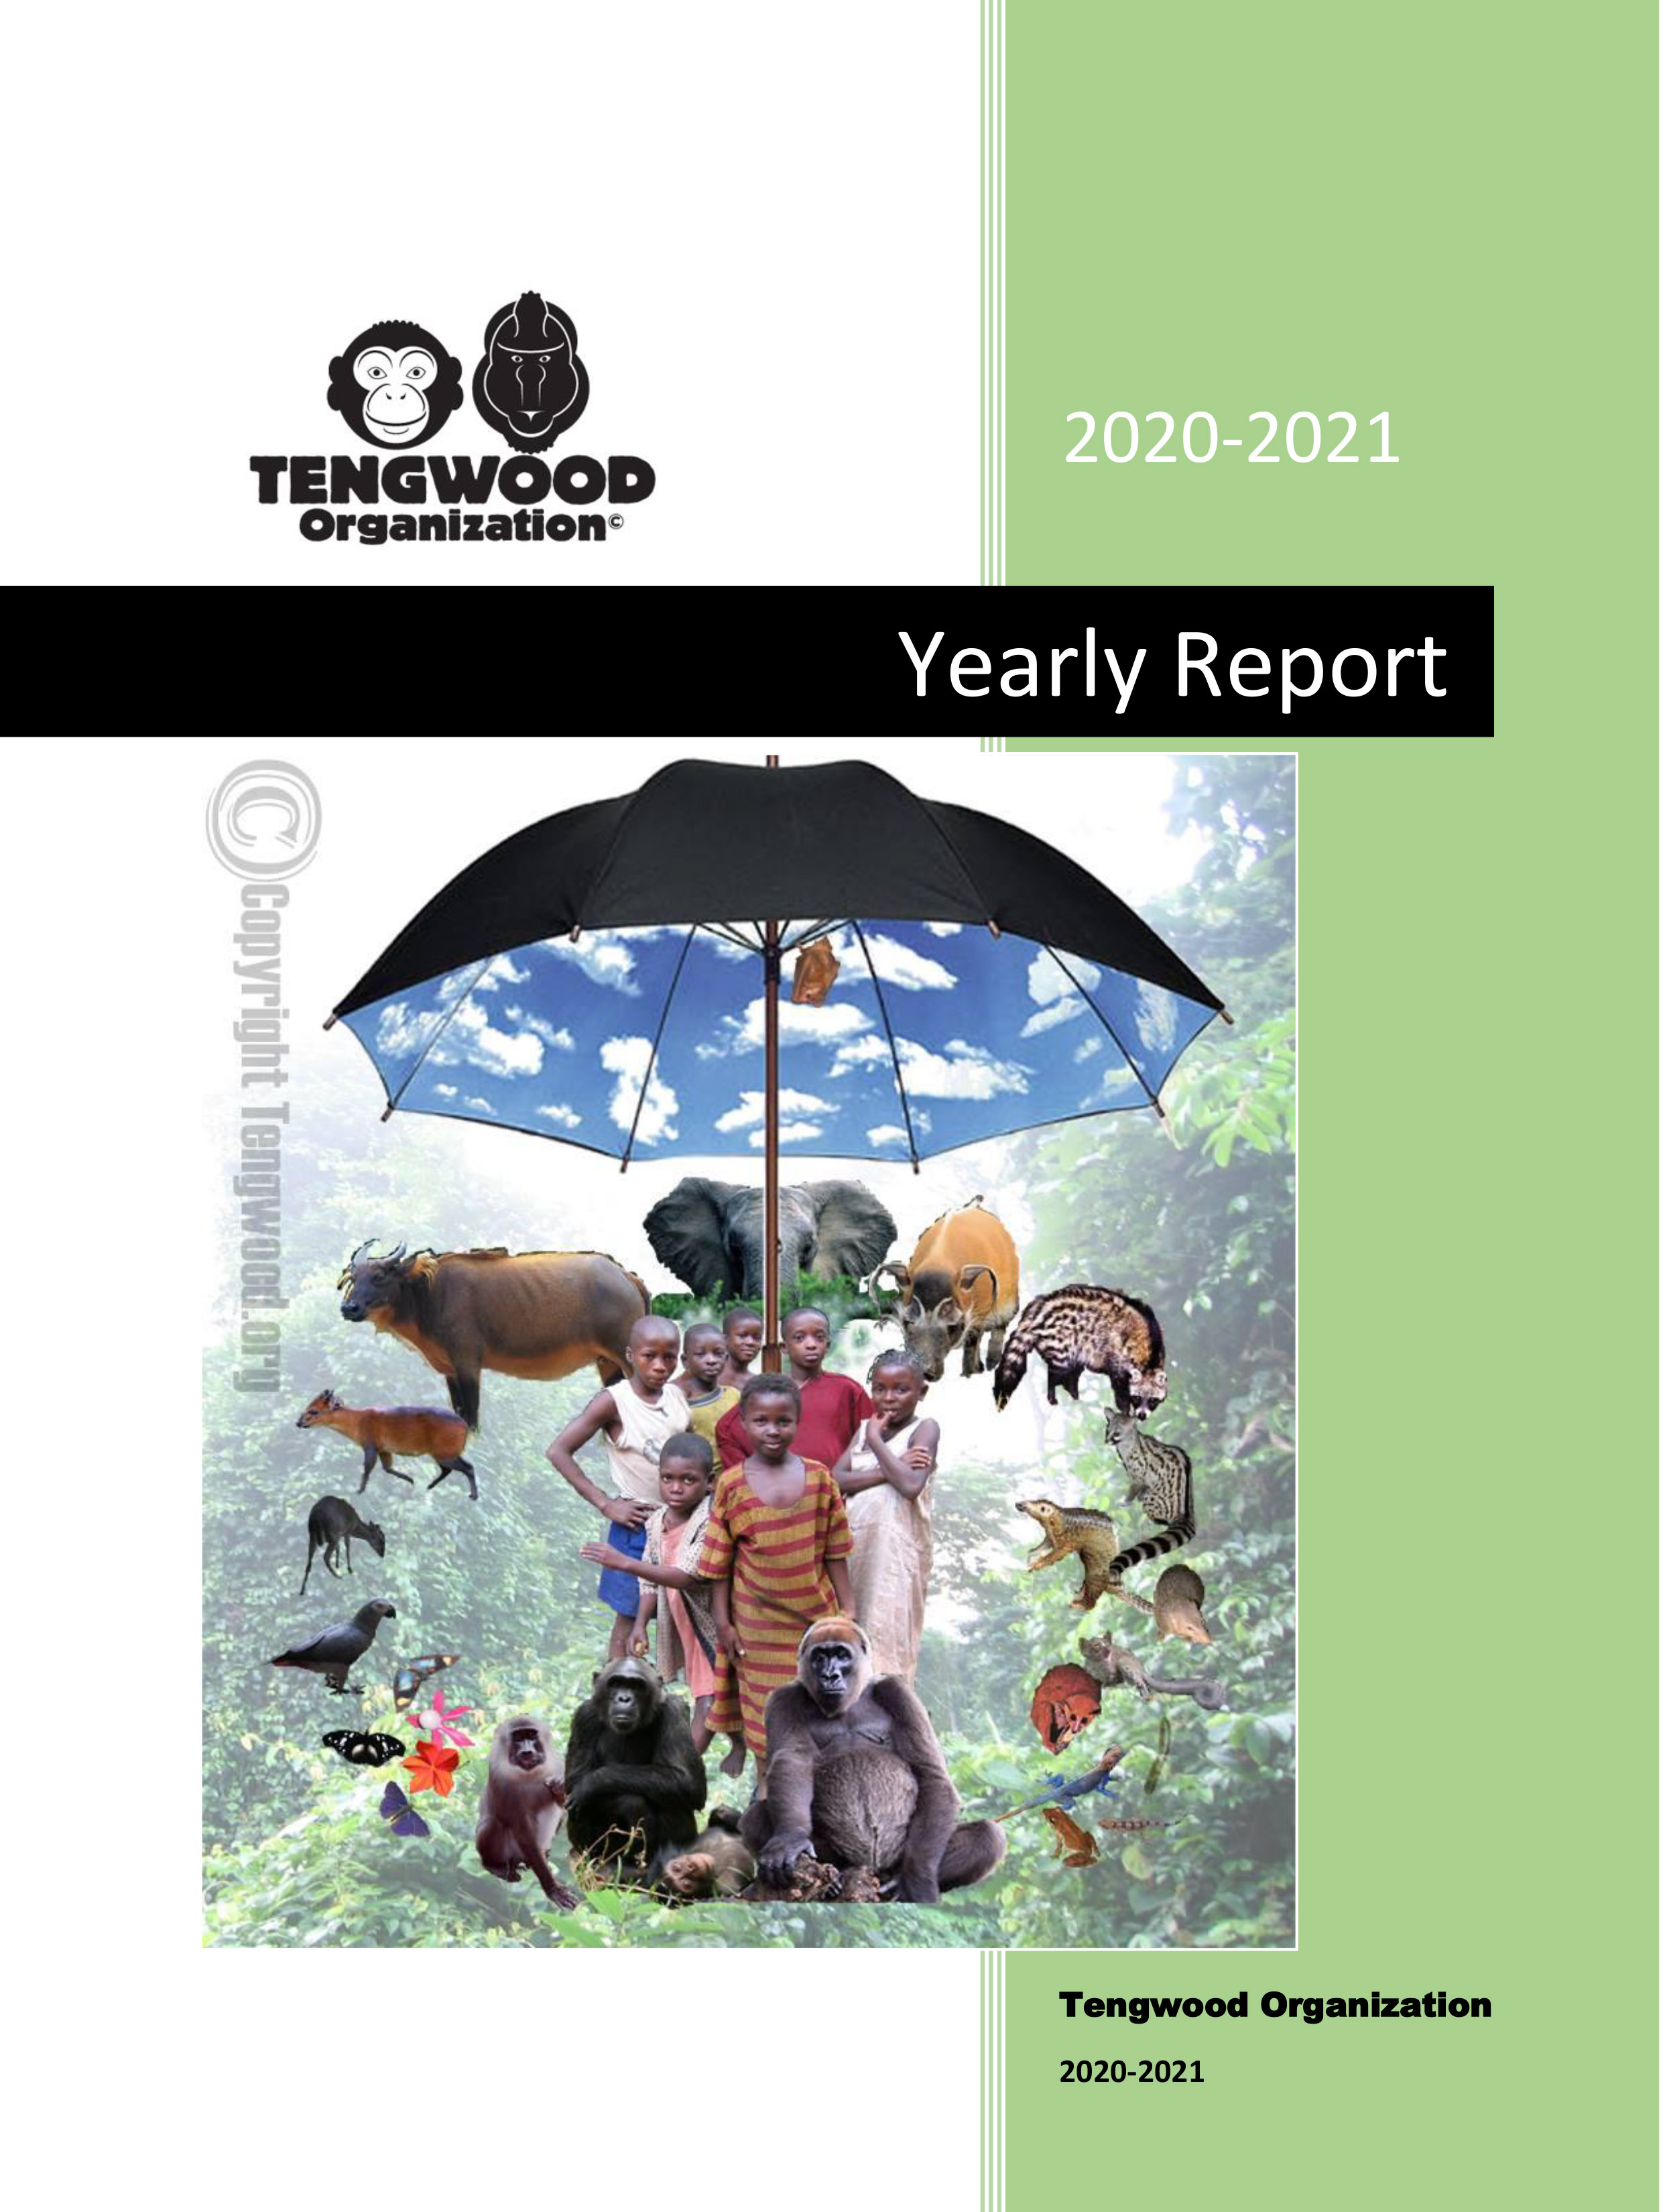 jahresrapport-2015-2016